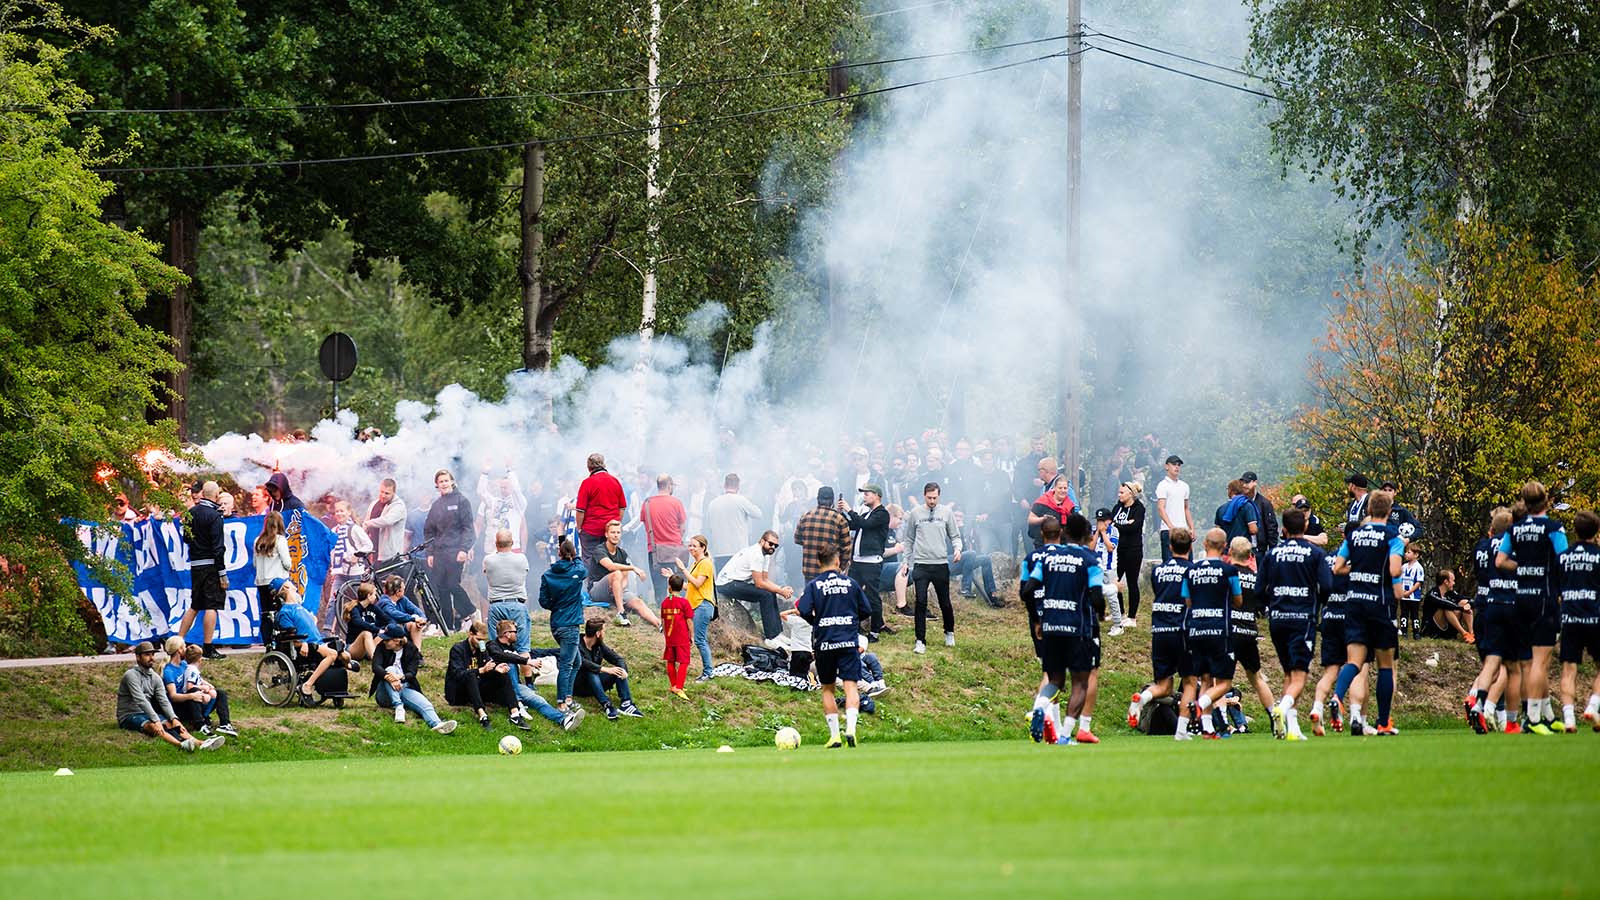 180819 Publik under en fotbollsträning med fotbollslaget i Allsvenskan IFK Göteborg den 19 augusti 2018 i Göteborg. Foto: MATHIAS BERGELD / BILDBYRÅN / Cop 200